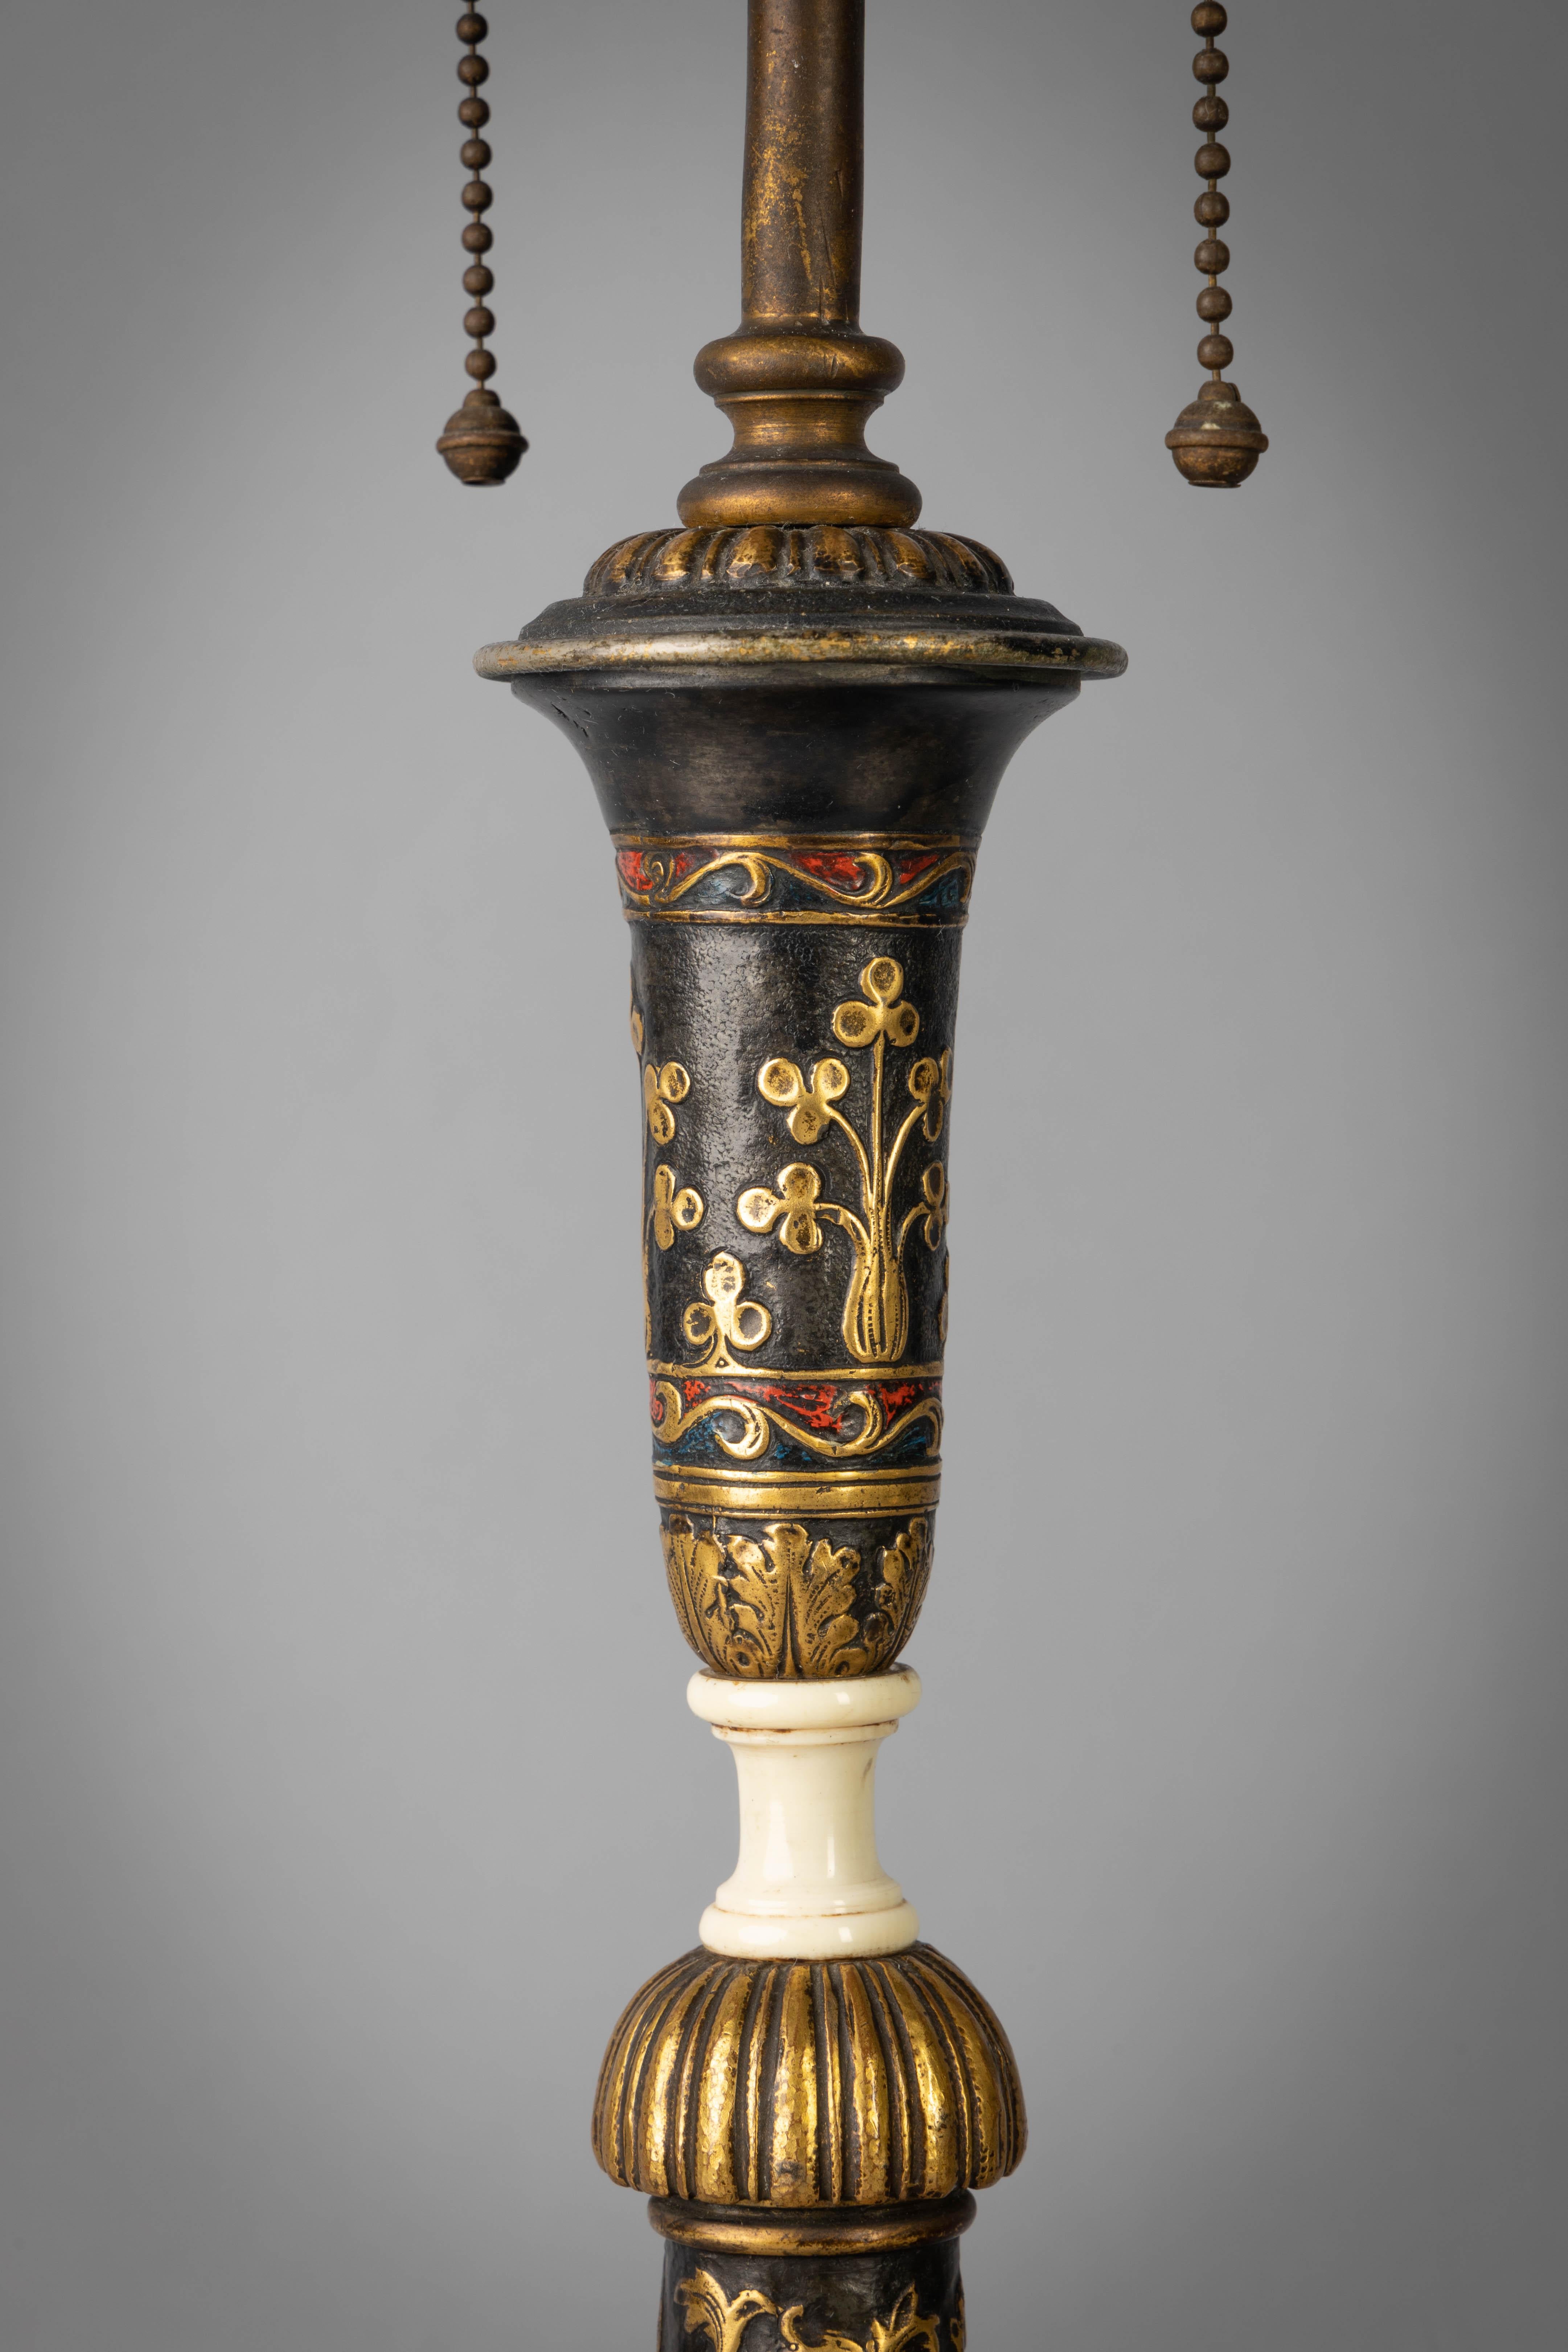 Paire de grandes lampes chandeliers en bronze doré, patiné et émaillé, E.F. Caldwell, vers 1900

De style renaissance, avec des rois et des reines s'adonnant à diverses activités au milieu d'un entrelacs de volutes et de feuillages.